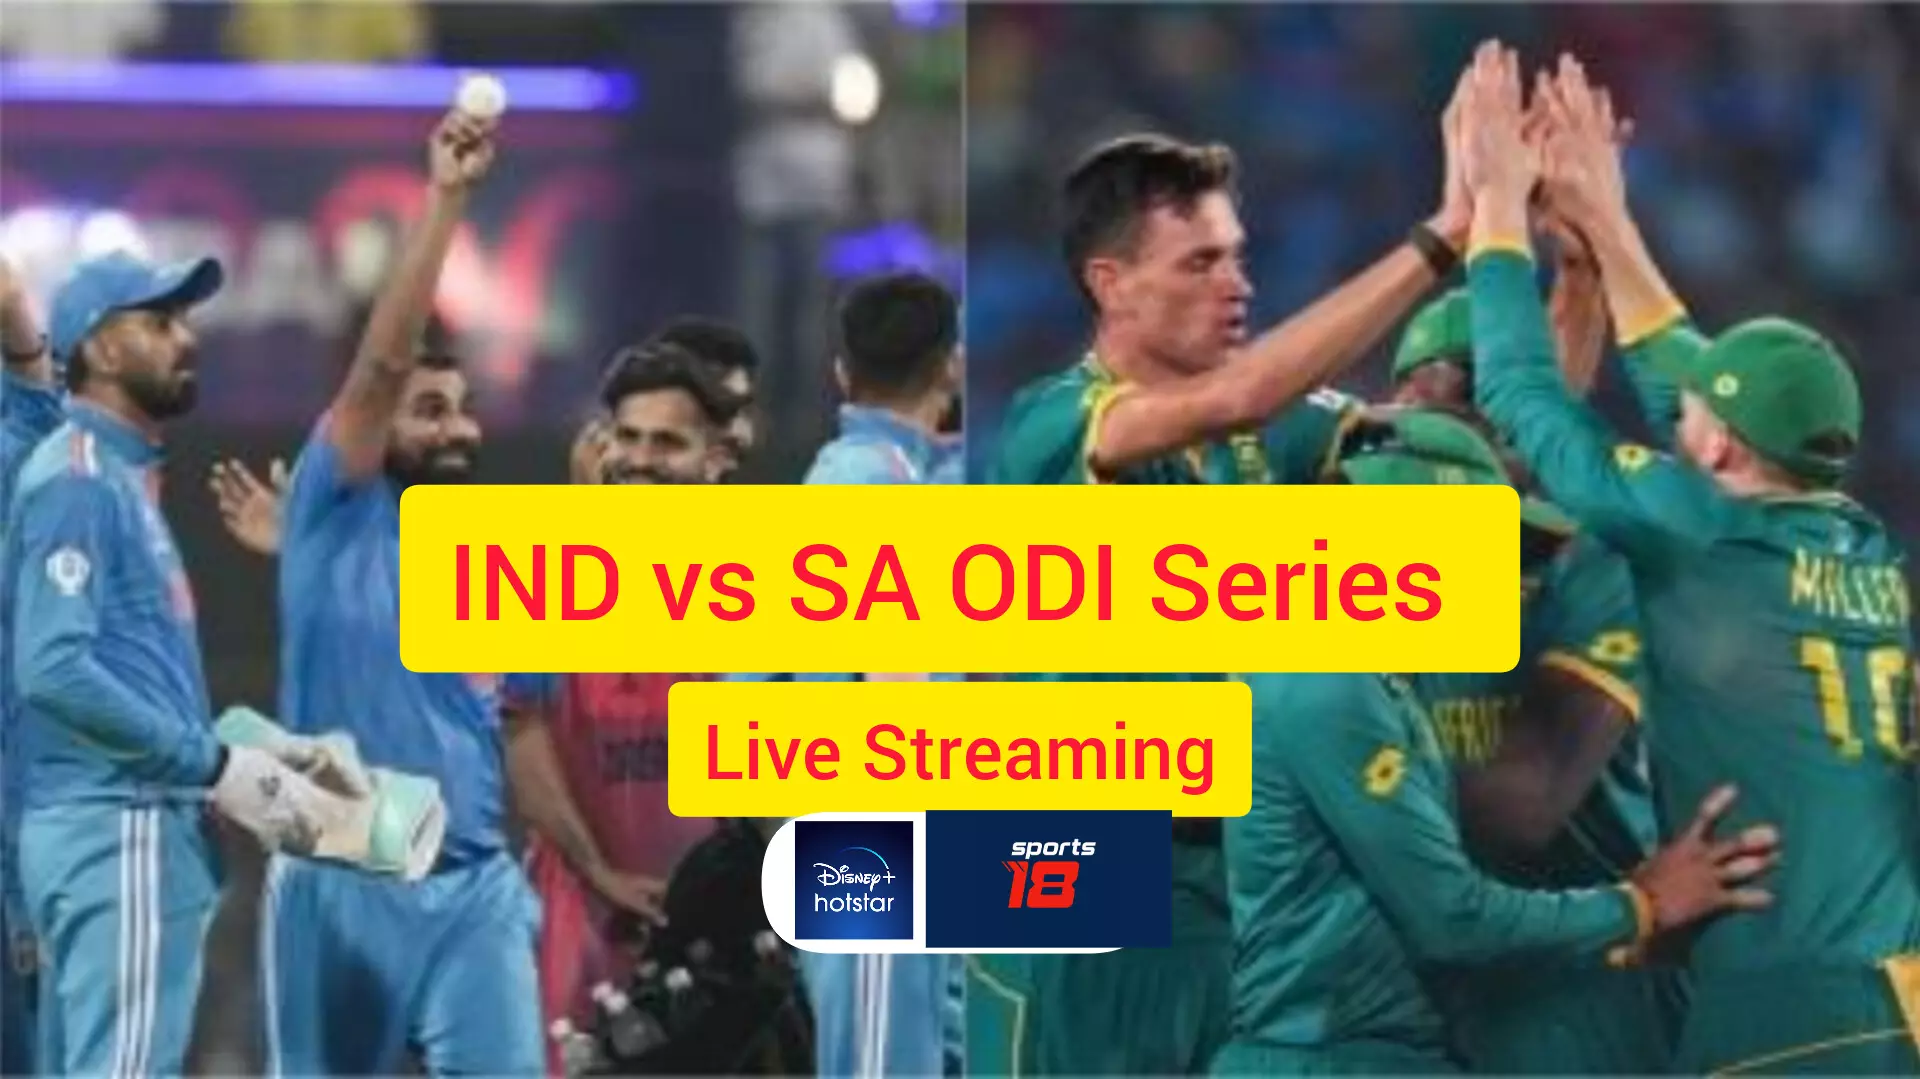 IND vs SA ODI Series Live Streaming Details (Pic Credit -Social Media)